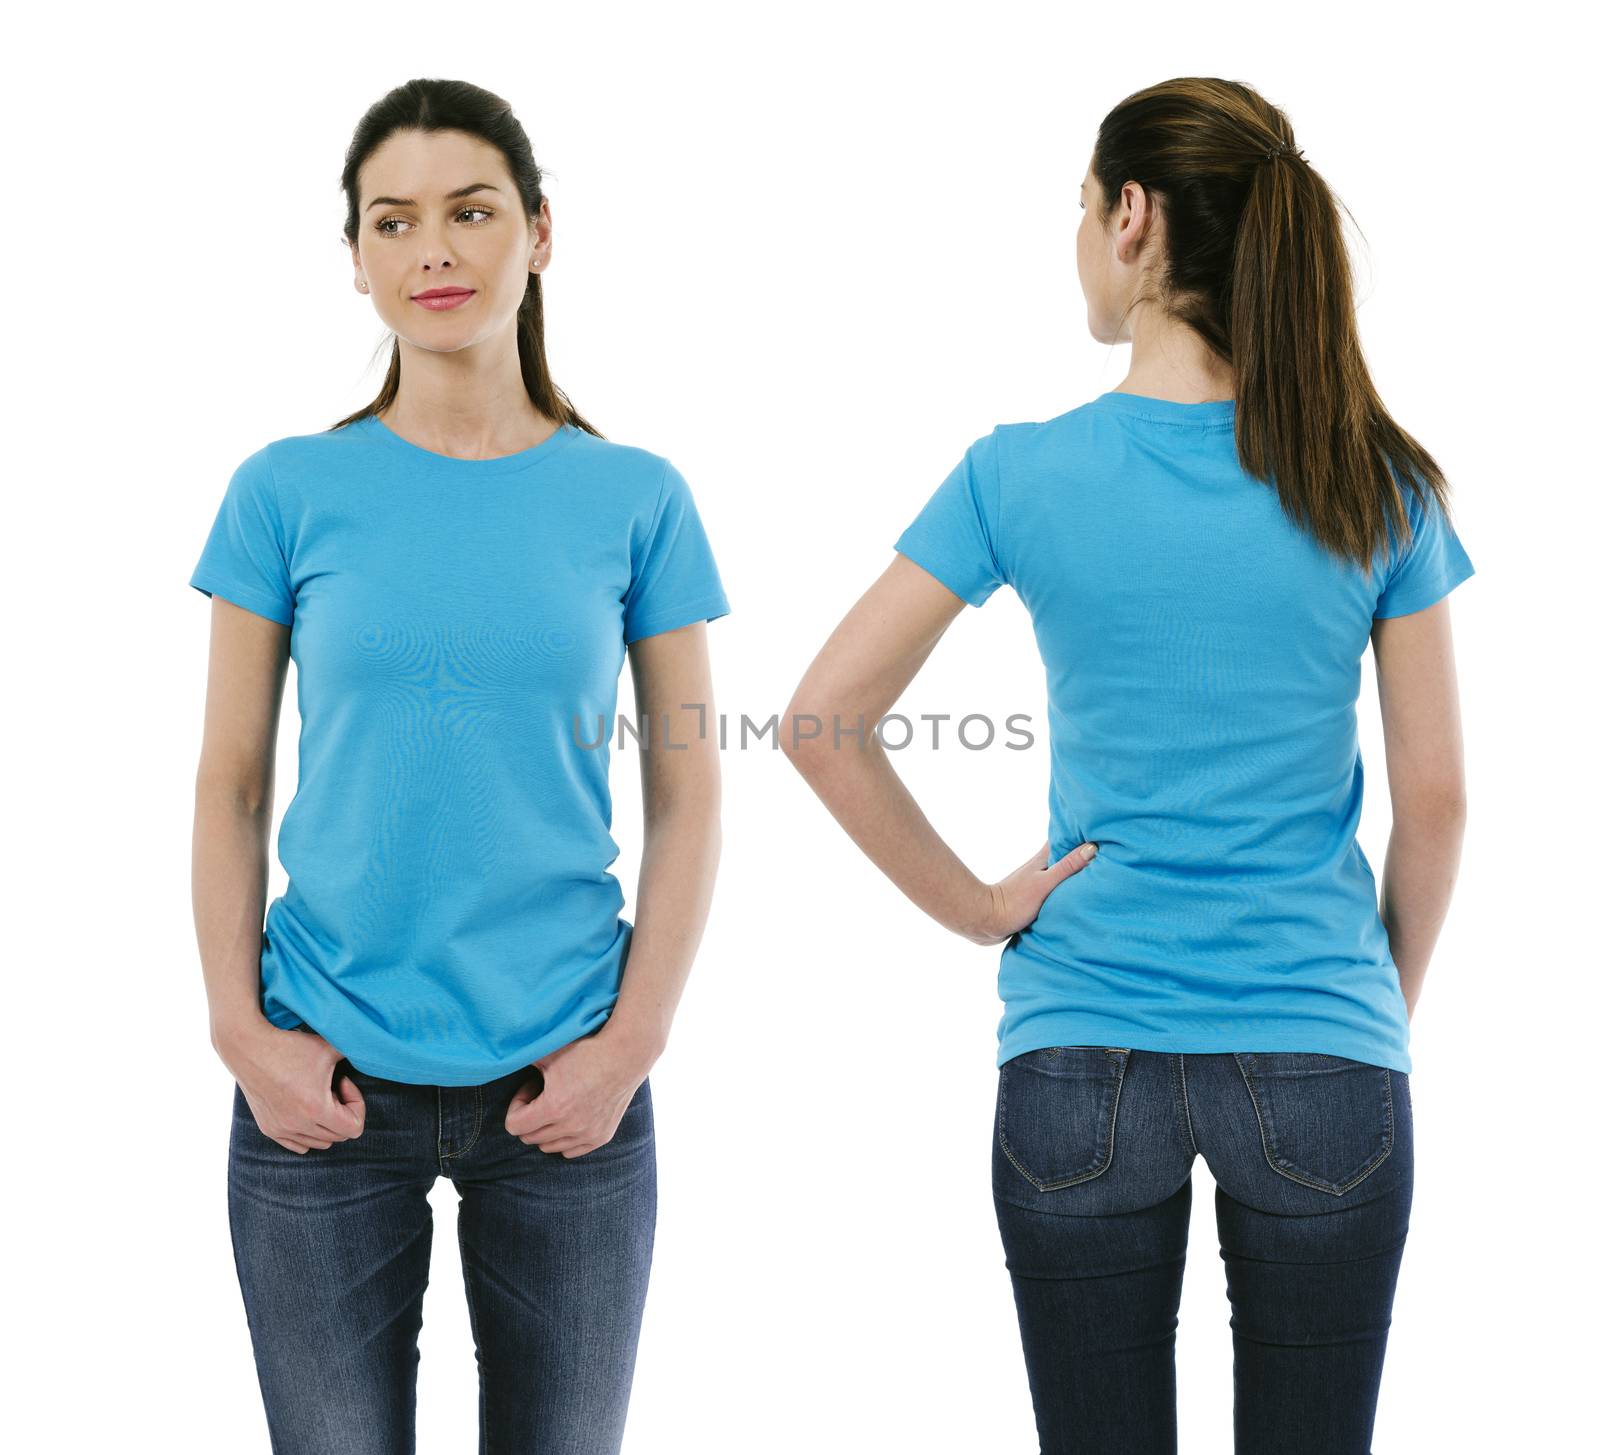 Brunette woman wearing blank light blue shirt by sumners